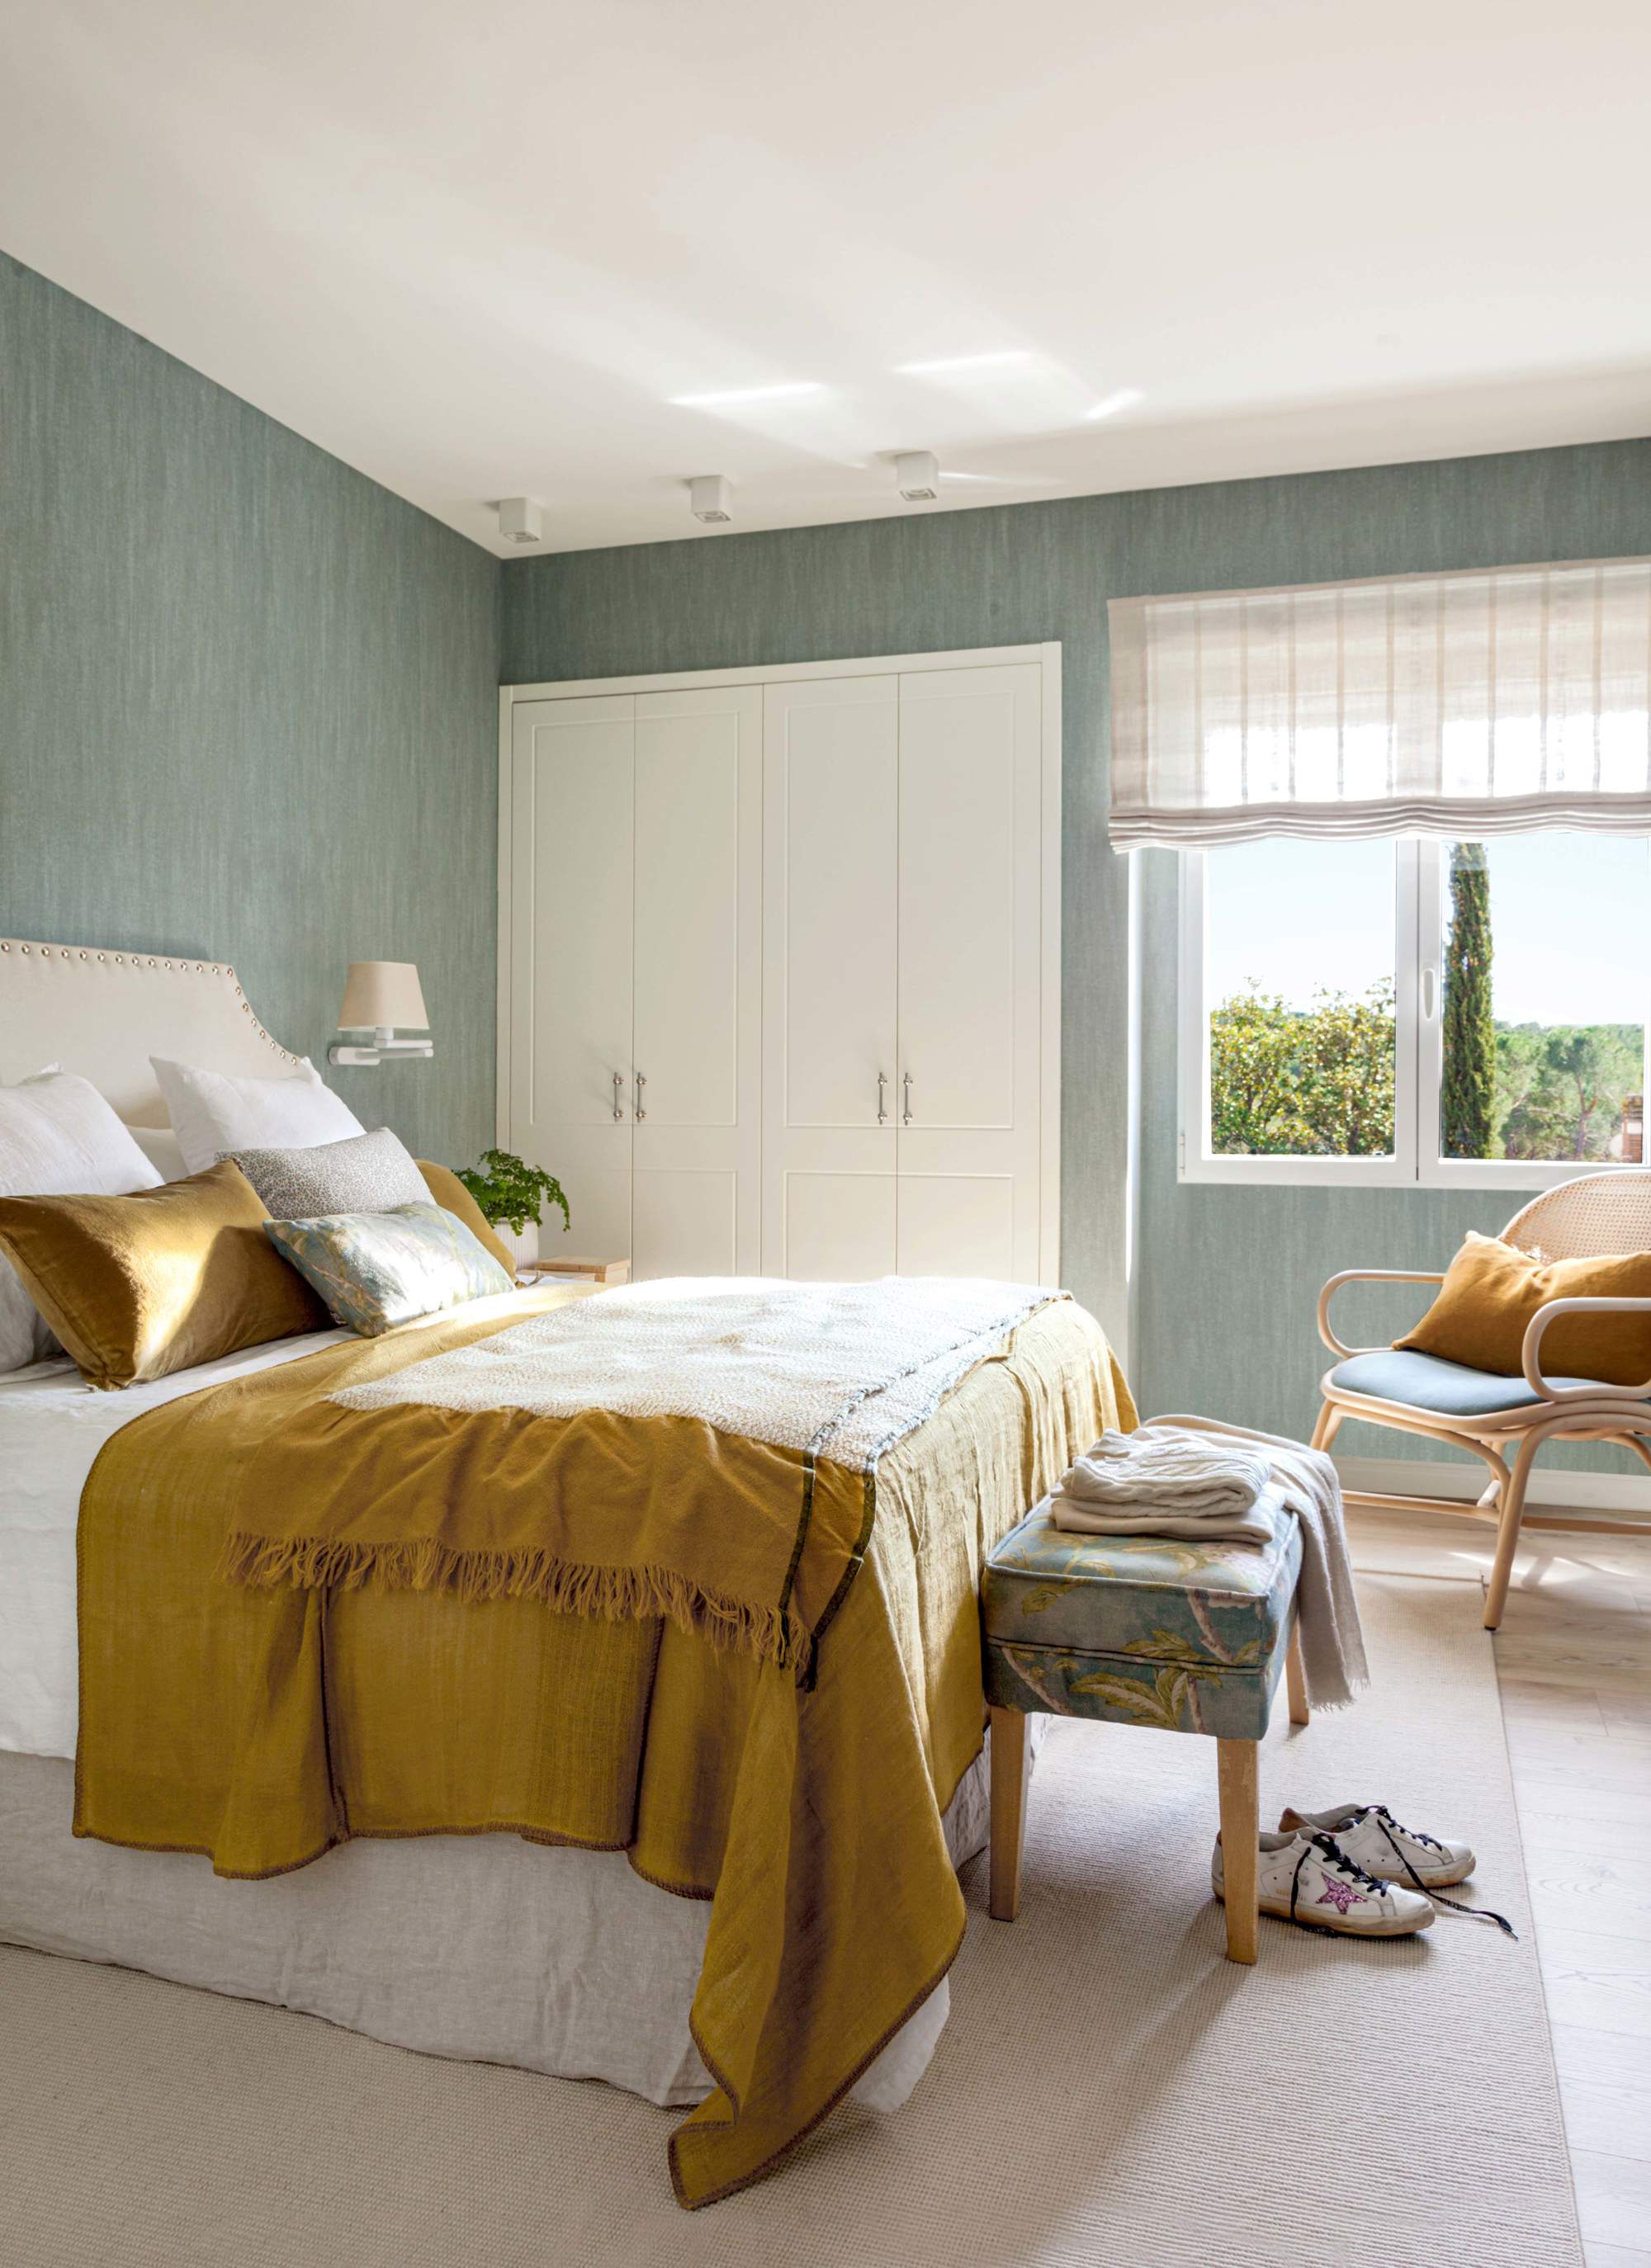 Dormitorio con papel pintado verde, armario empotrado y cabecero tapizado